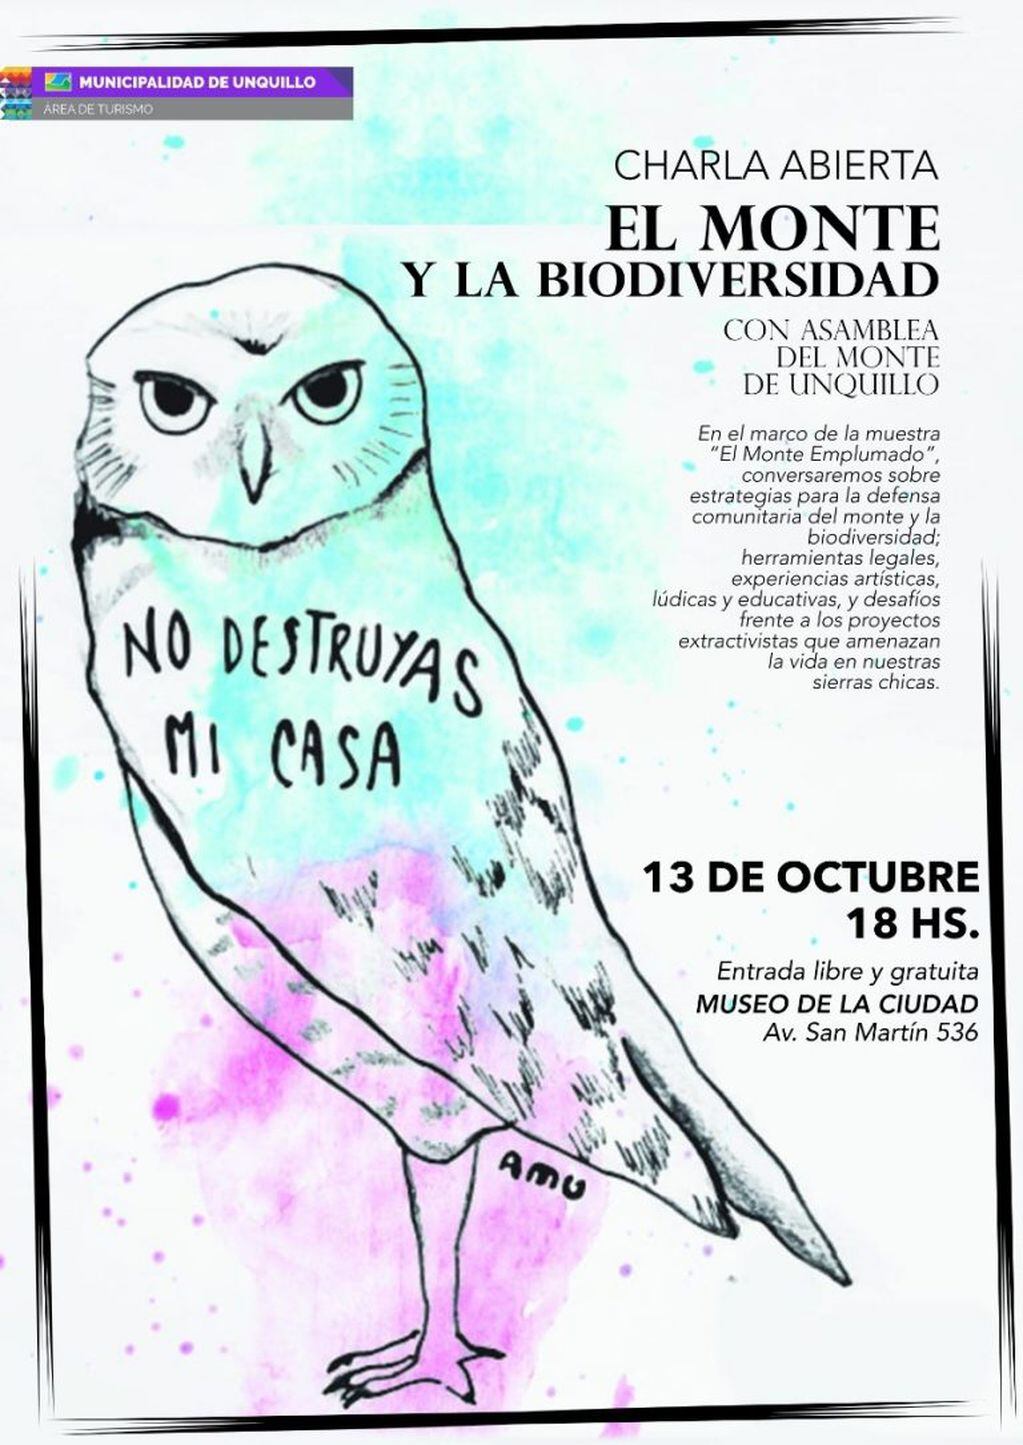 Charla Abierta "El Monte y la Biodiversidad".